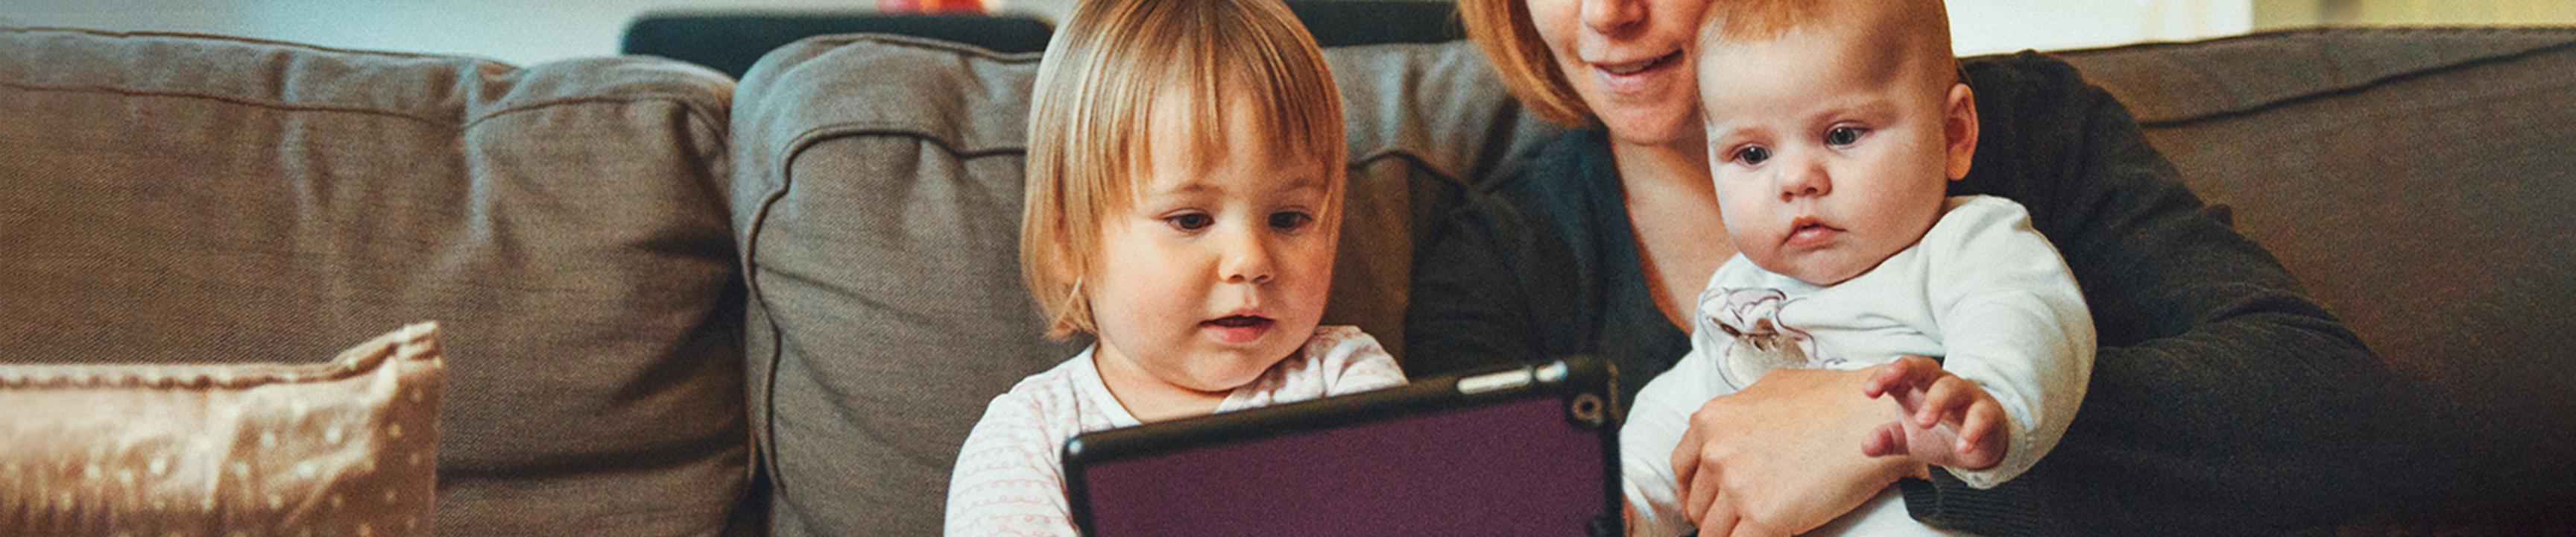 ребенок и малыш, глядя на планшетное устройство